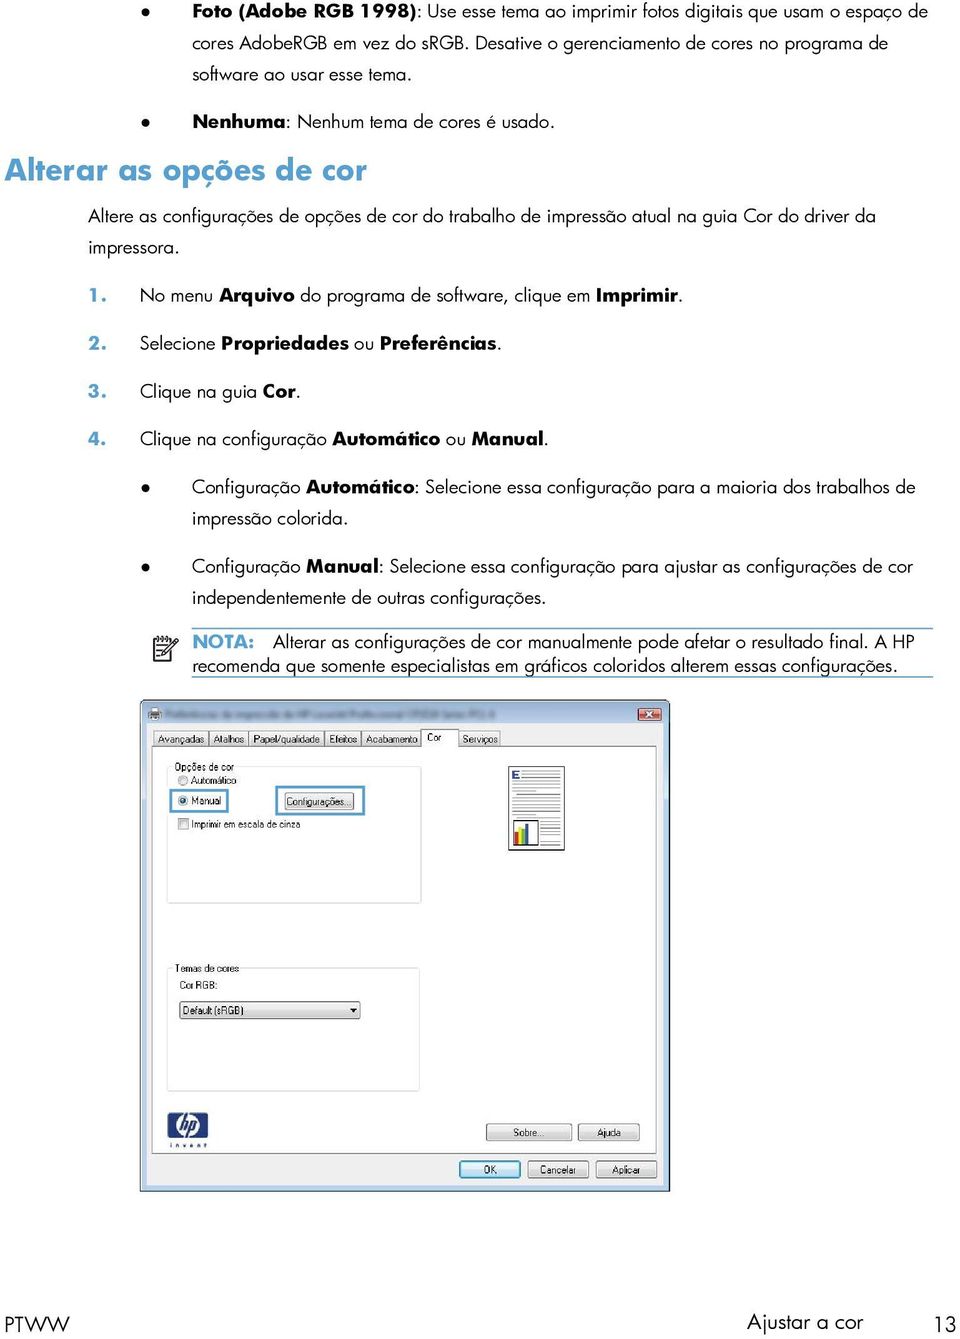 No menu Arquivo do programa de software, clique em Imprimir. 2. Selecione Propriedades ou Preferências. 3. Clique na guia Cor. 4. Clique na configuração Automático ou Manual.